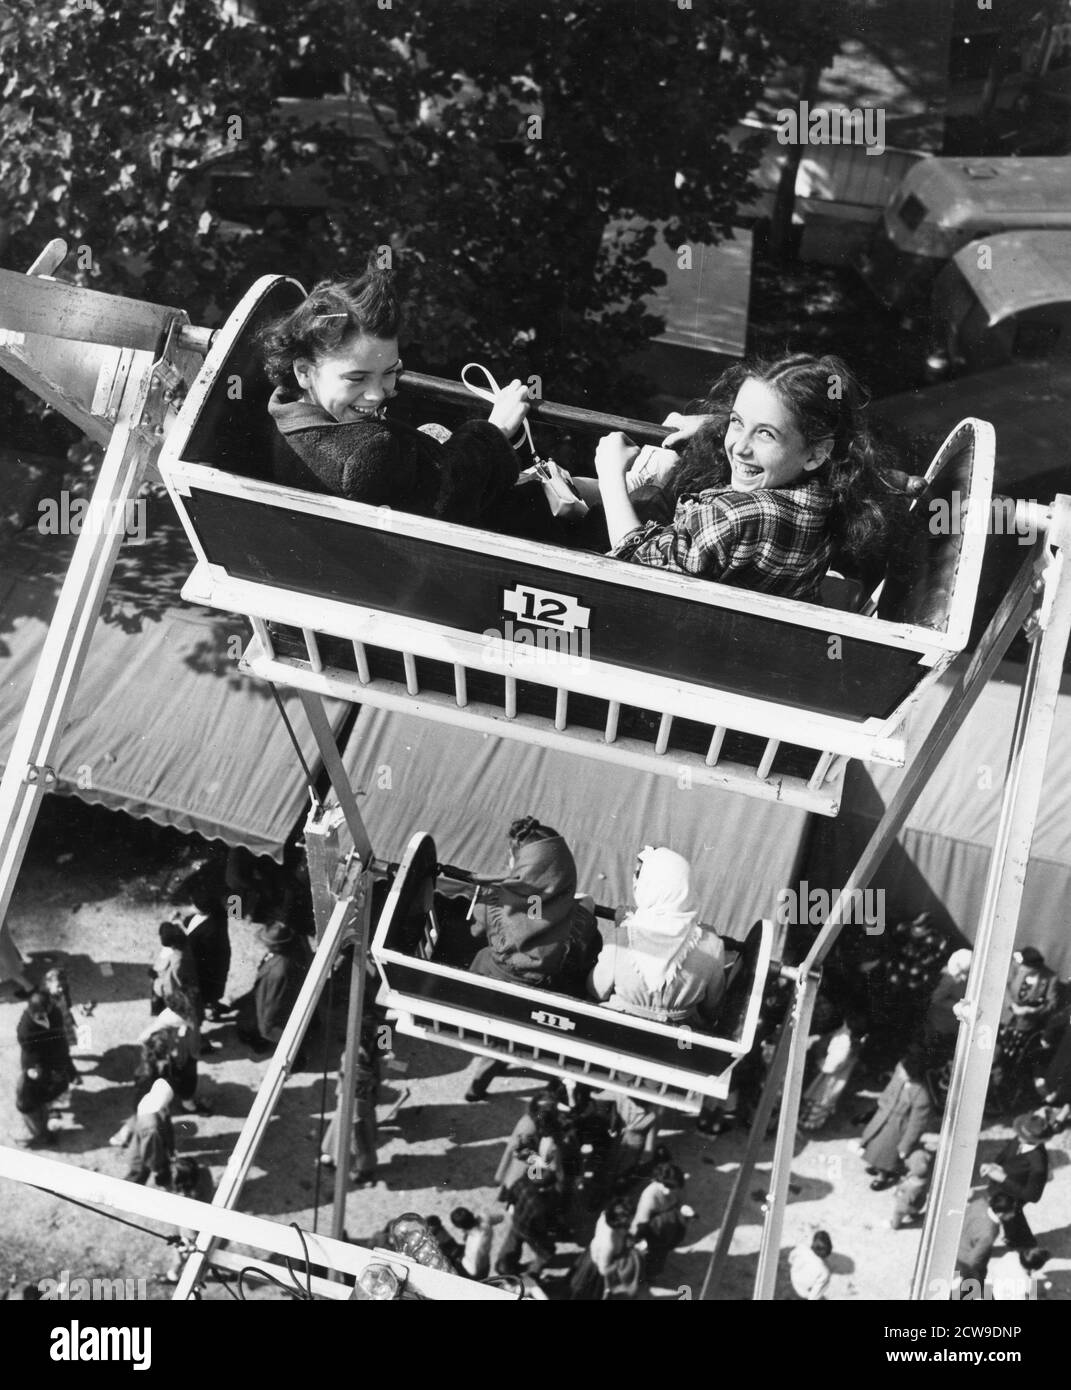 Le ragazze sorridenti guardano indietro al fotografo mentre cavalcano la ruota panoramica in una fiera della contea, Lancaster, OH, 1949. (Foto di United States Information Agency/RBM Vintage Images) Foto Stock